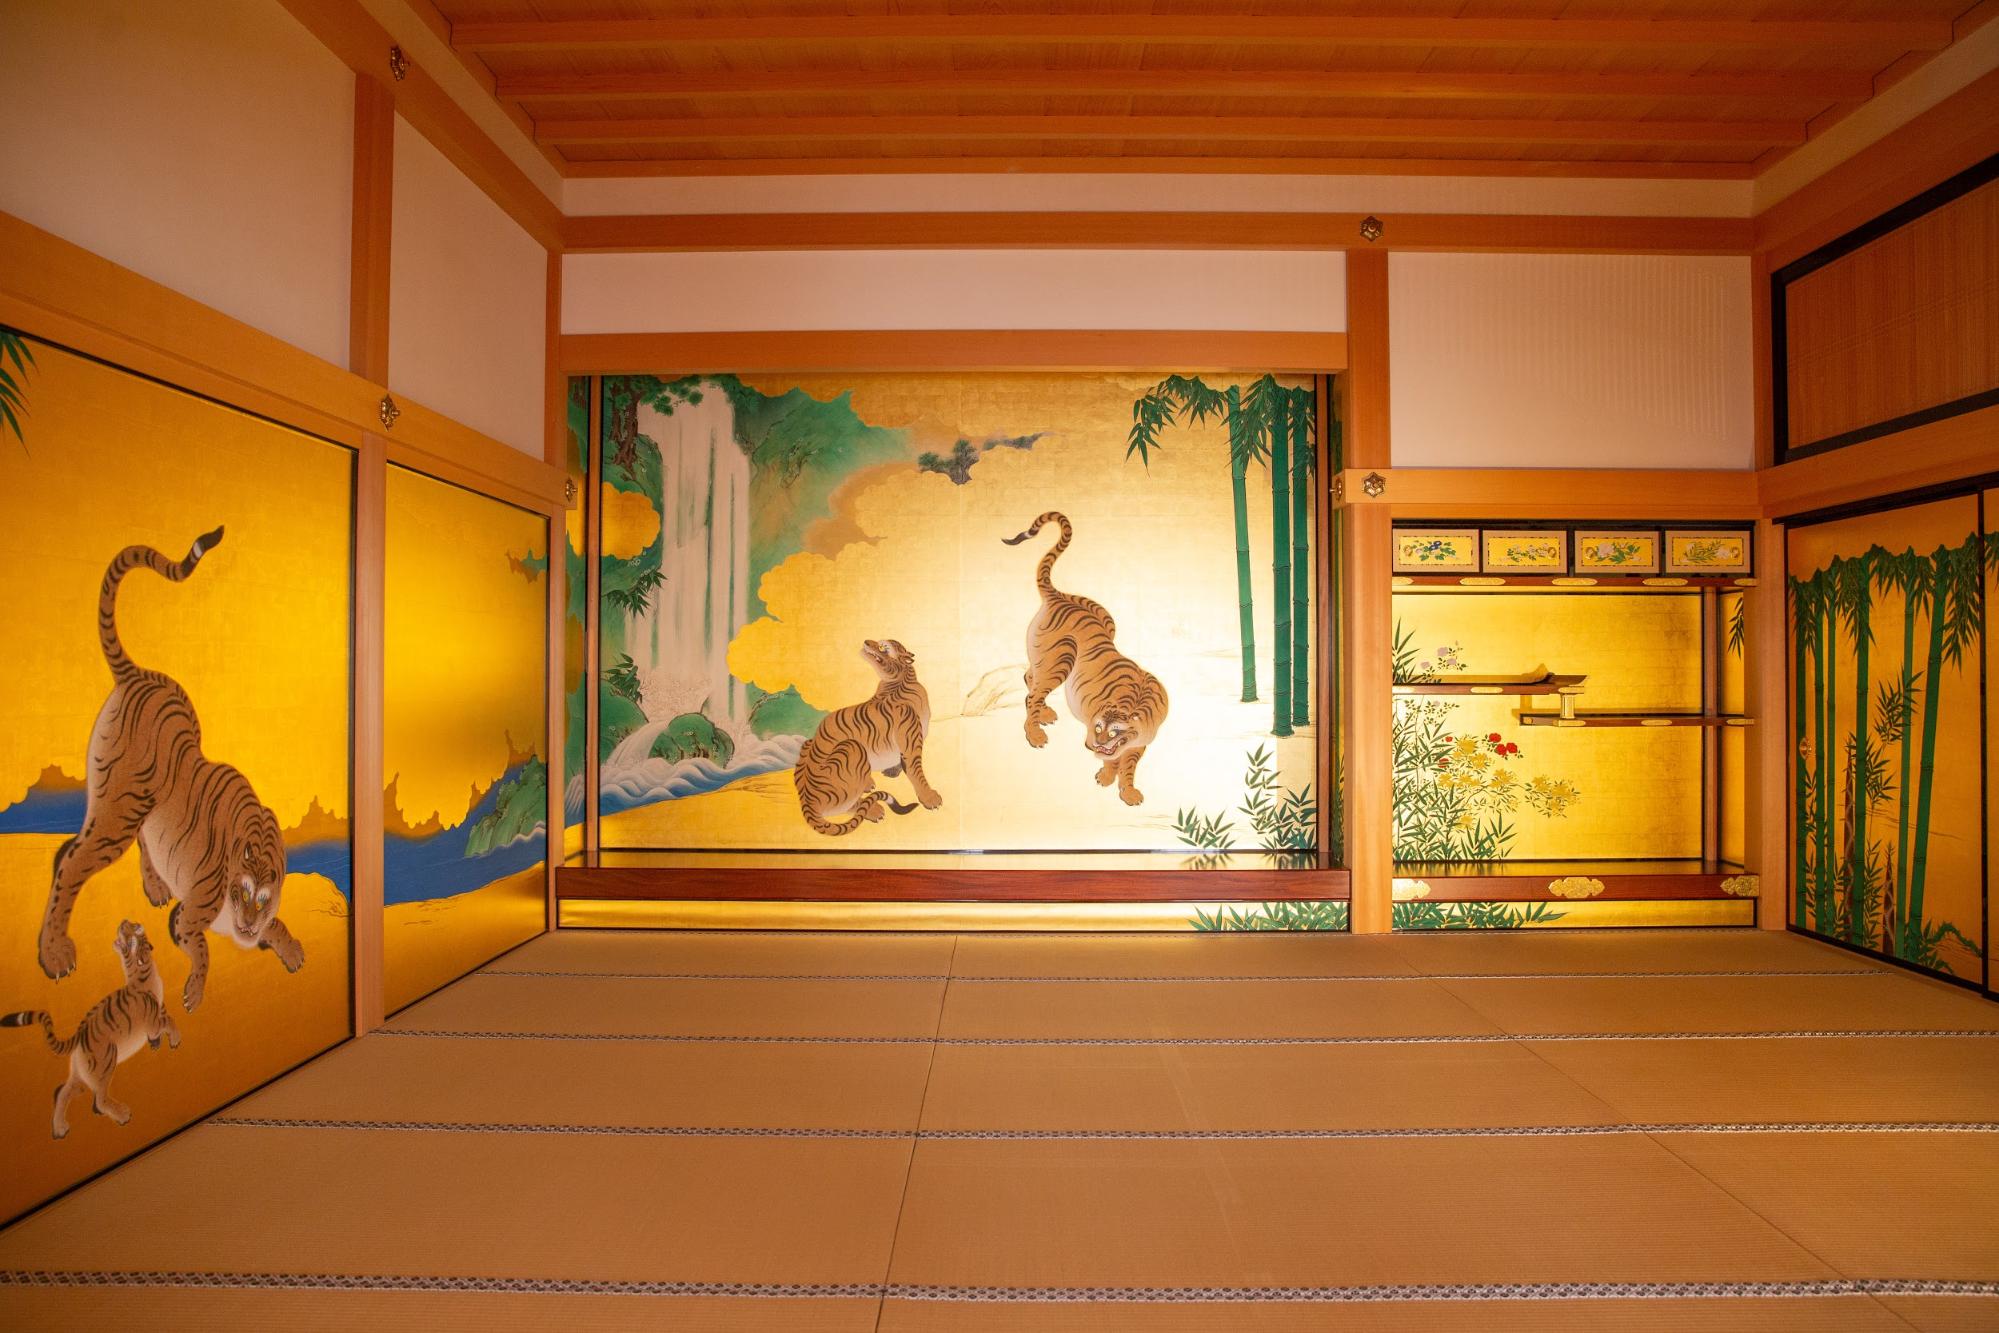 Hồi sinh diện mạo của 400 năm trước. Cực kỳ lộng lẫy! Tôi đã đến &quot;Điện Honmaru của lâu đài Nagoya&quot; sau khi được trùng tu.